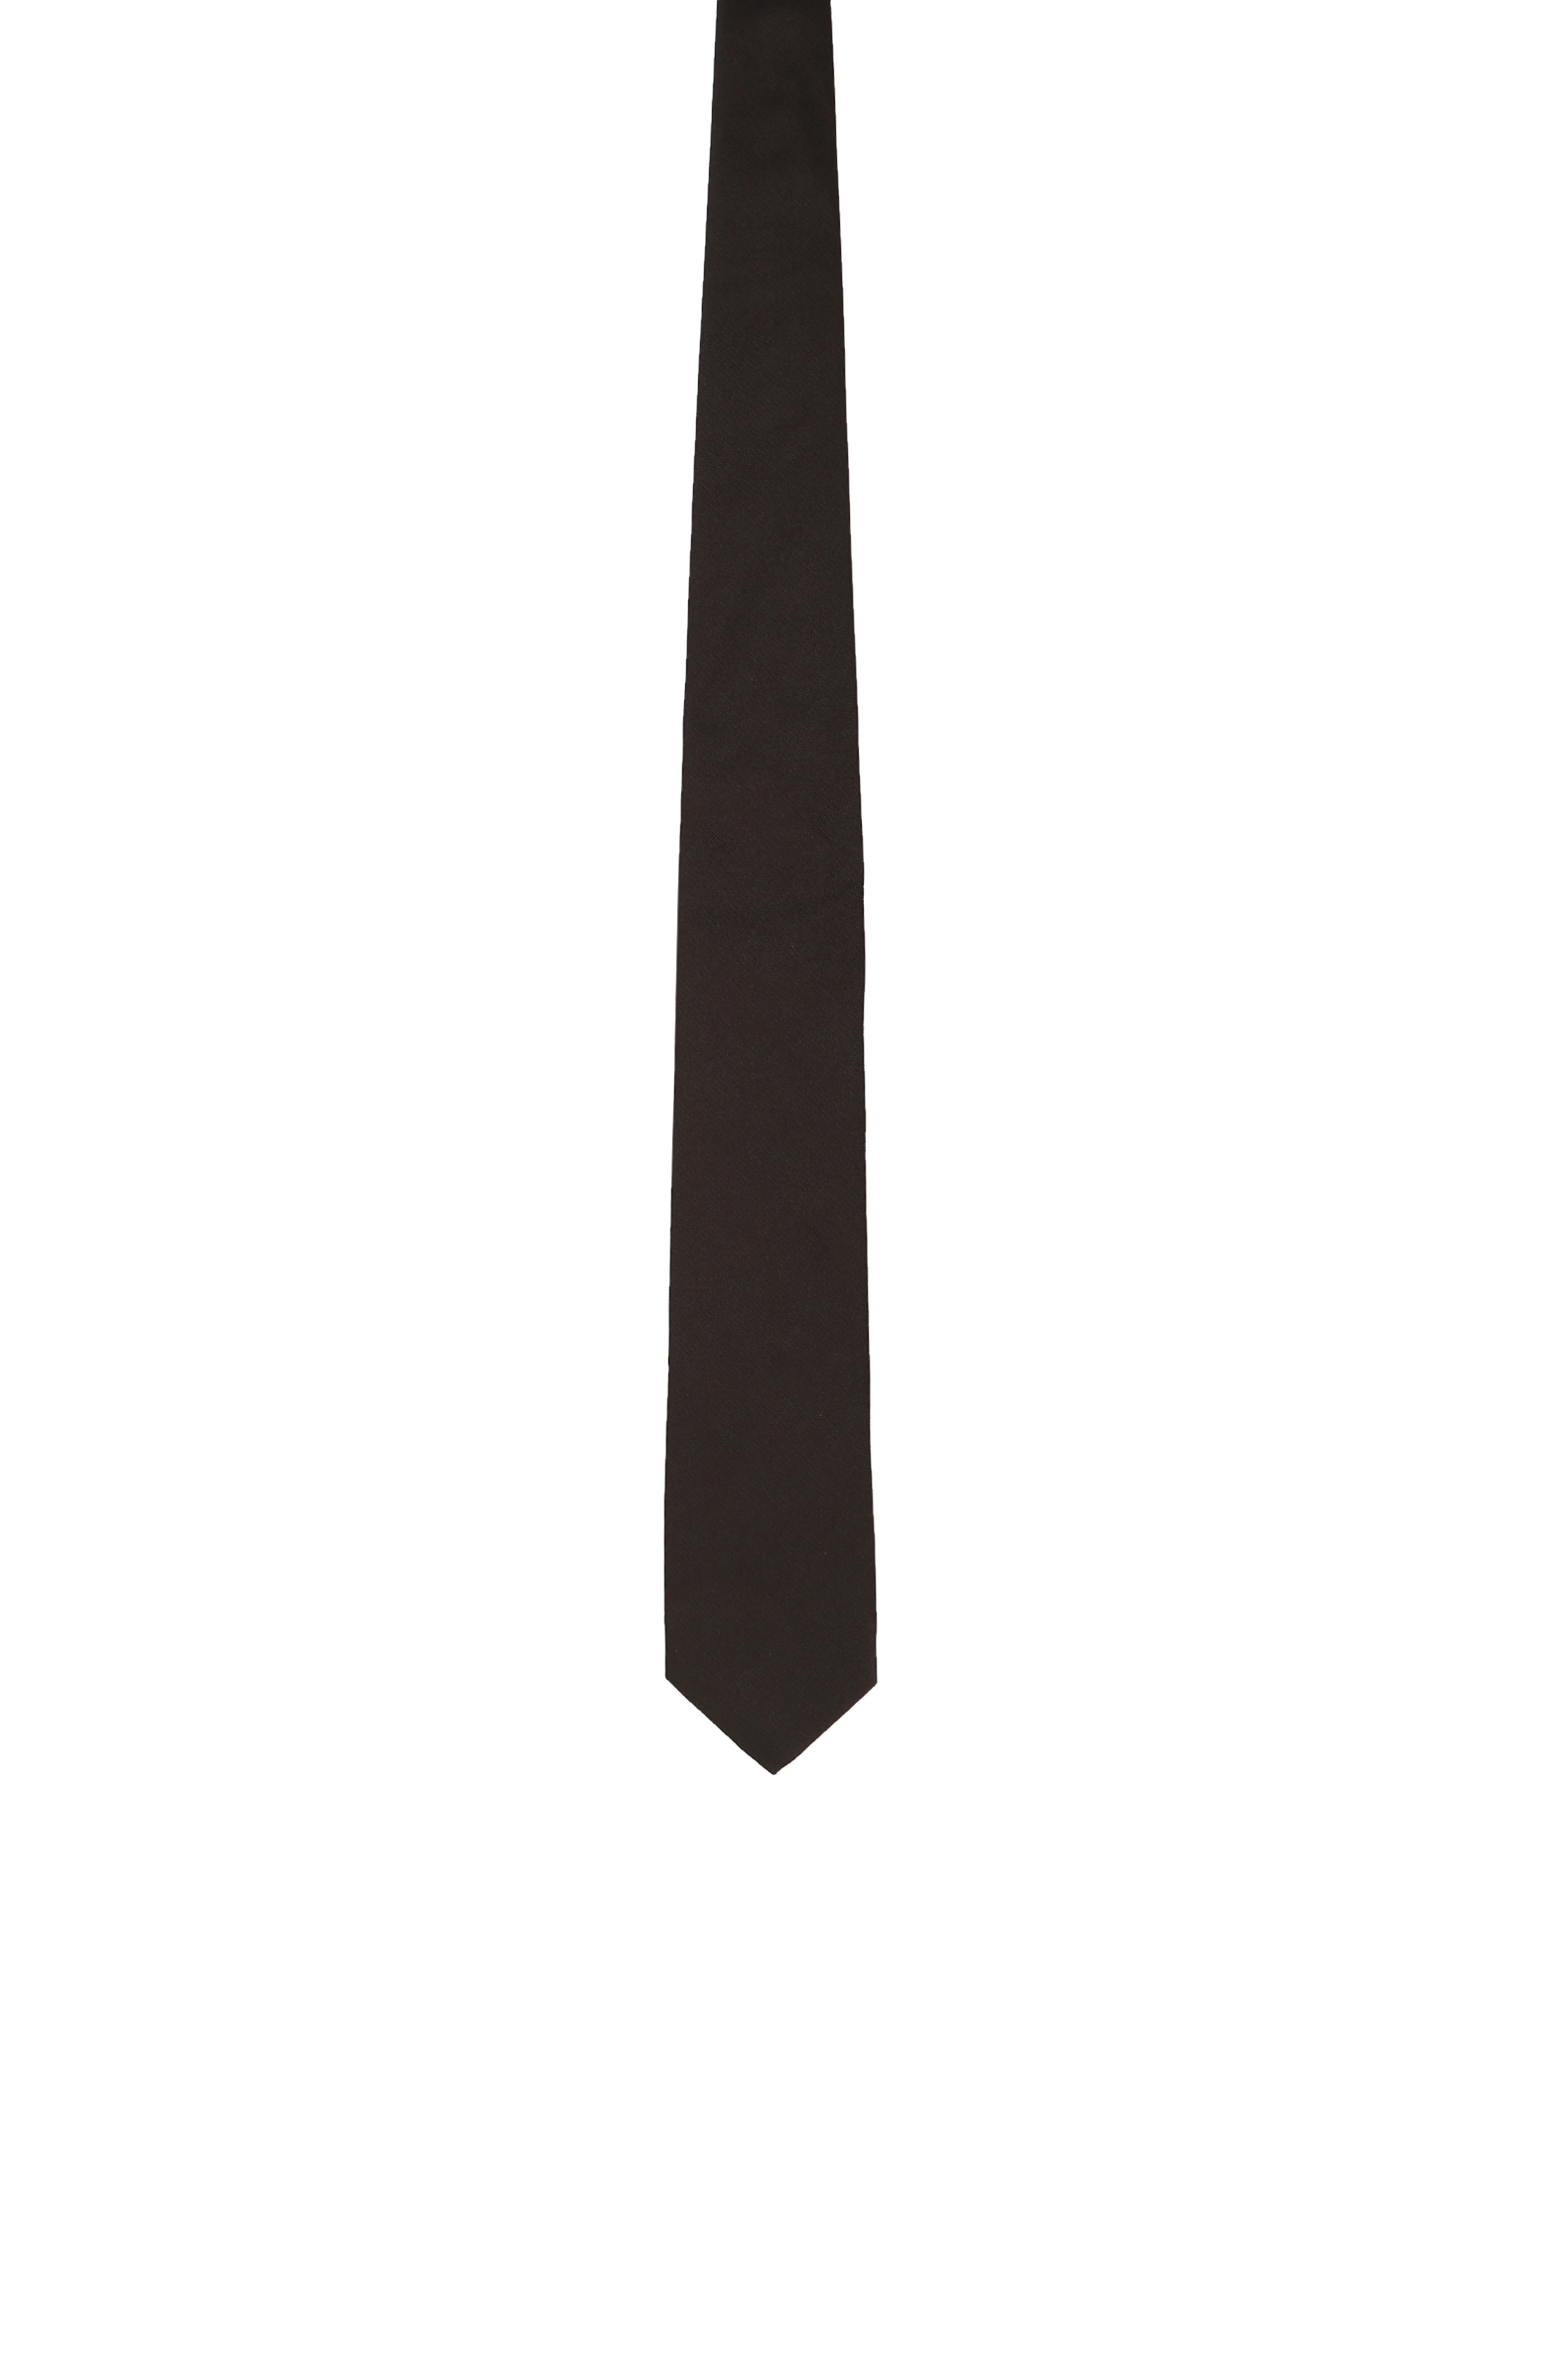 Siyah Ipek Erkek Kravat